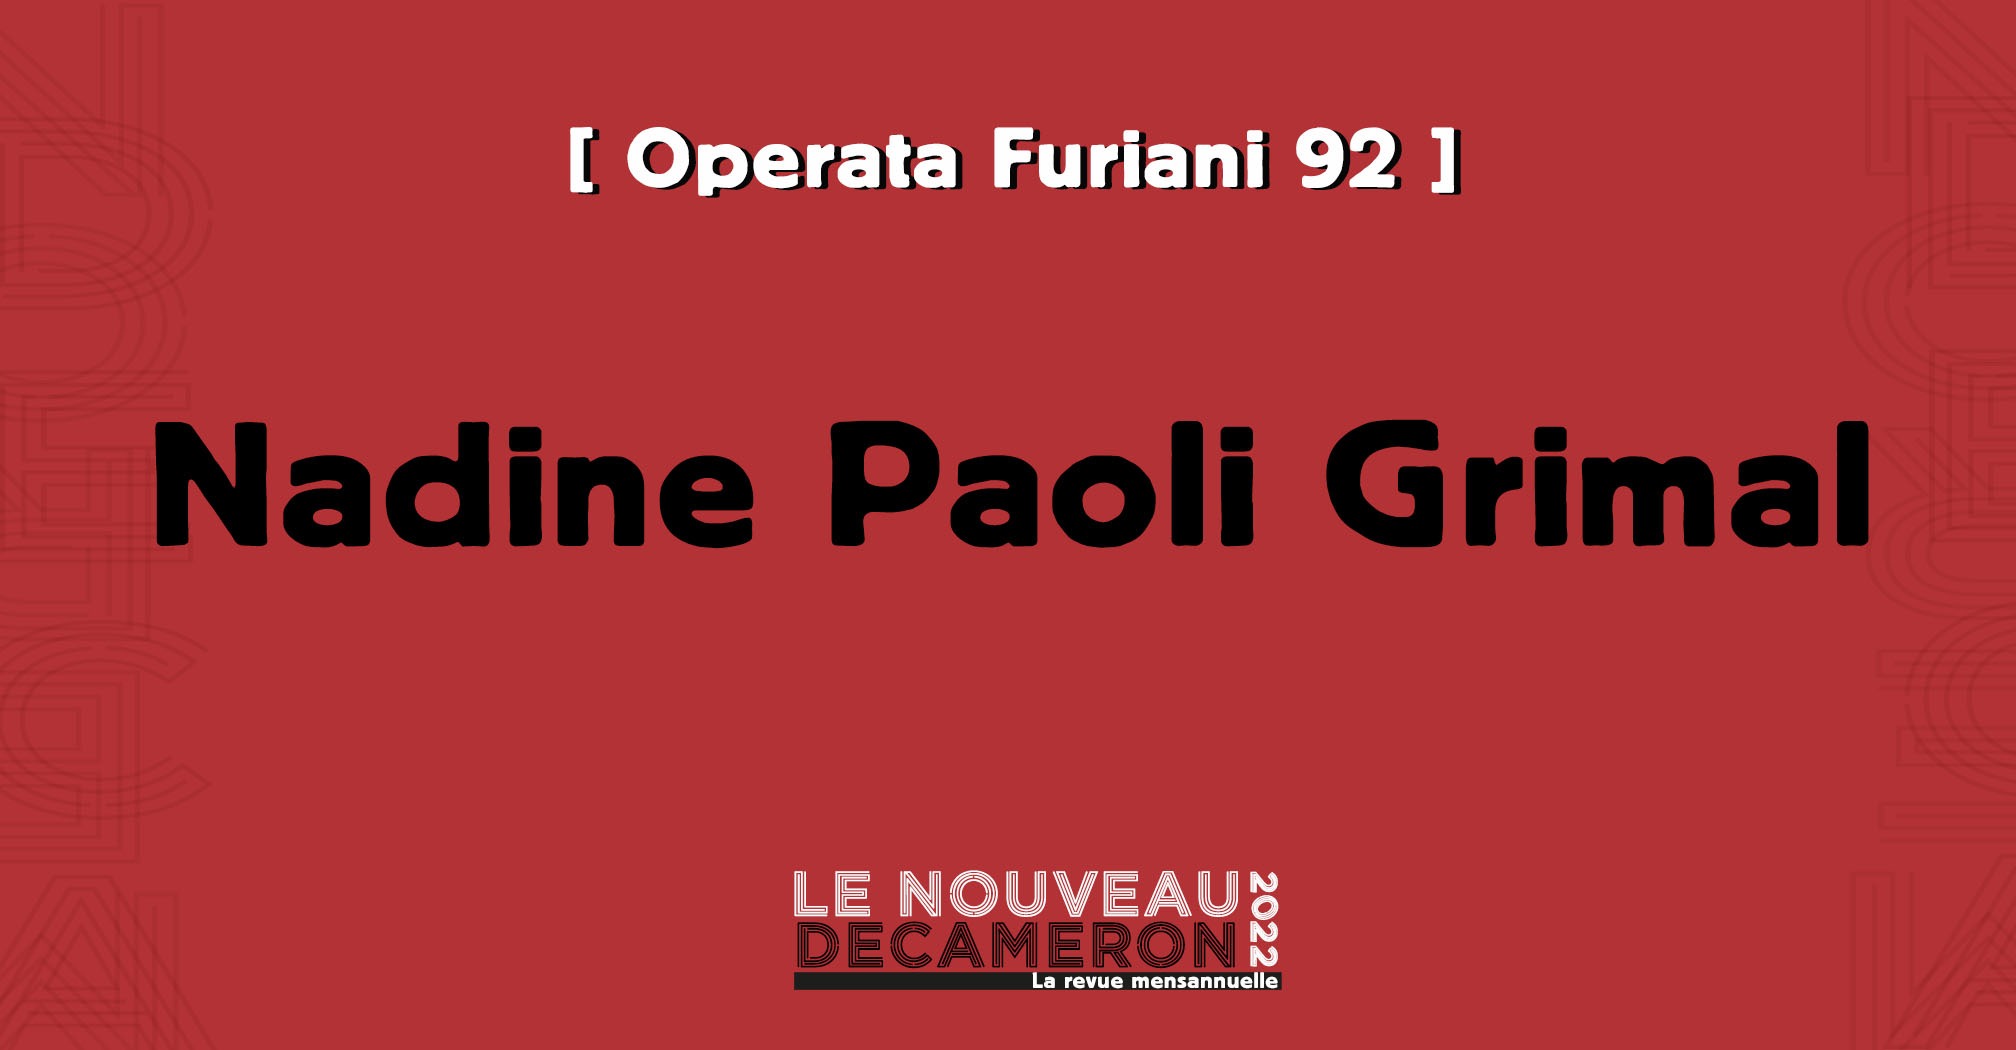 Operata di memoria Furiani 92 - Nadine Paoli Grimal